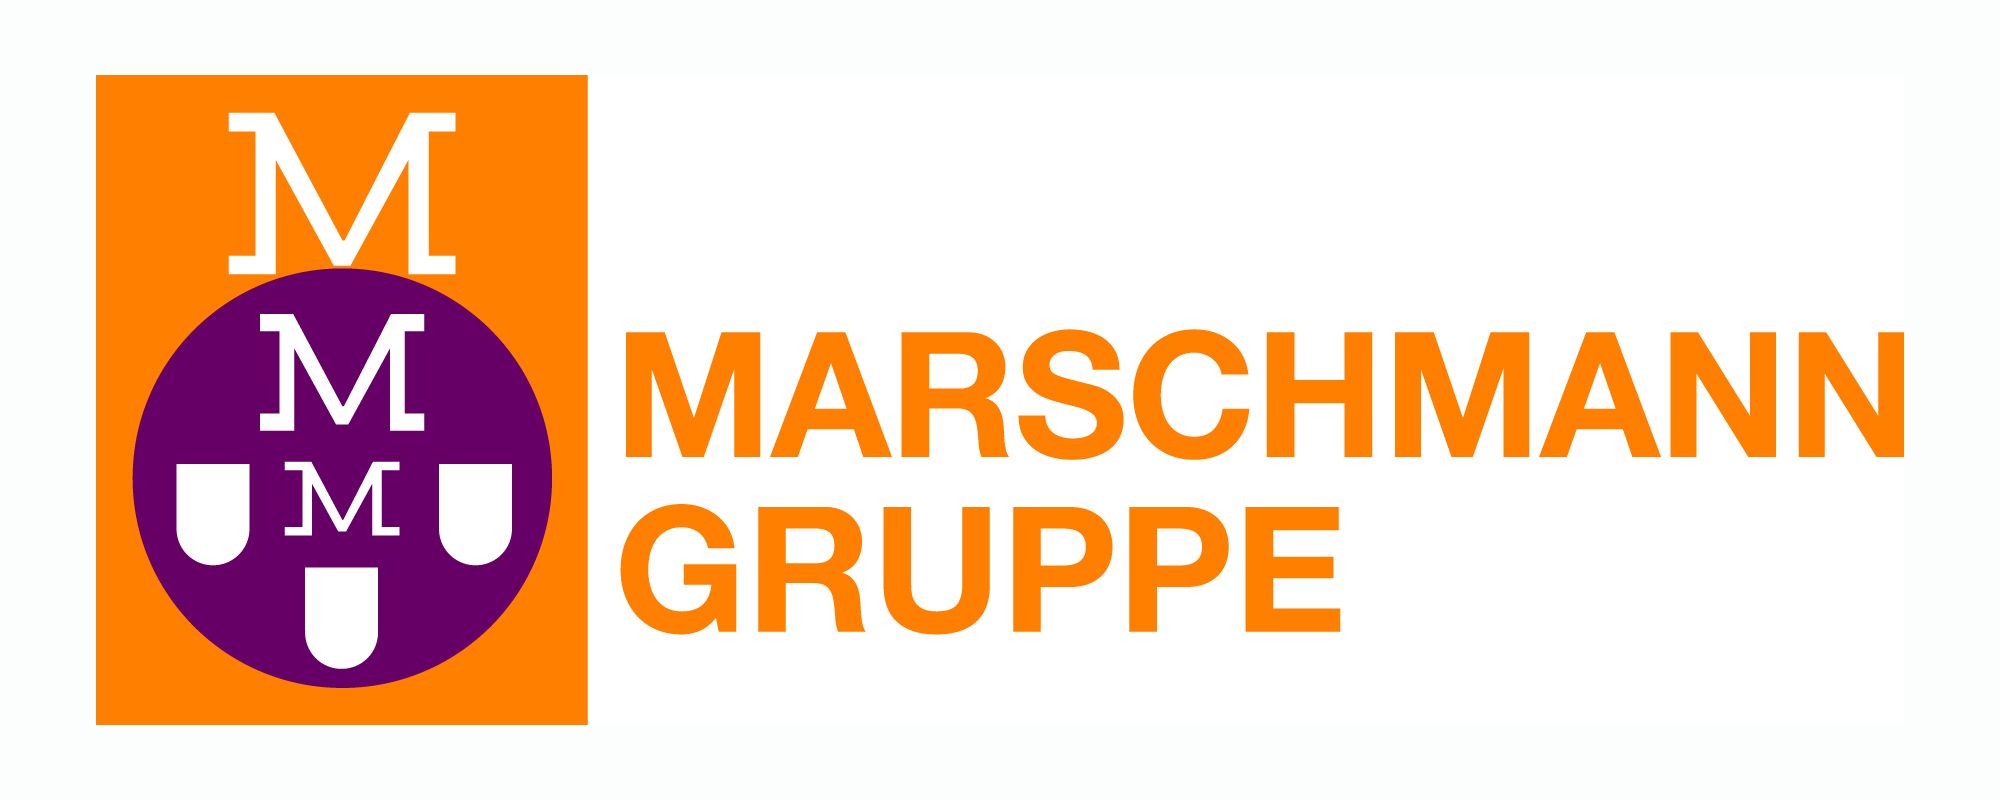 Marschmann-Gruppe